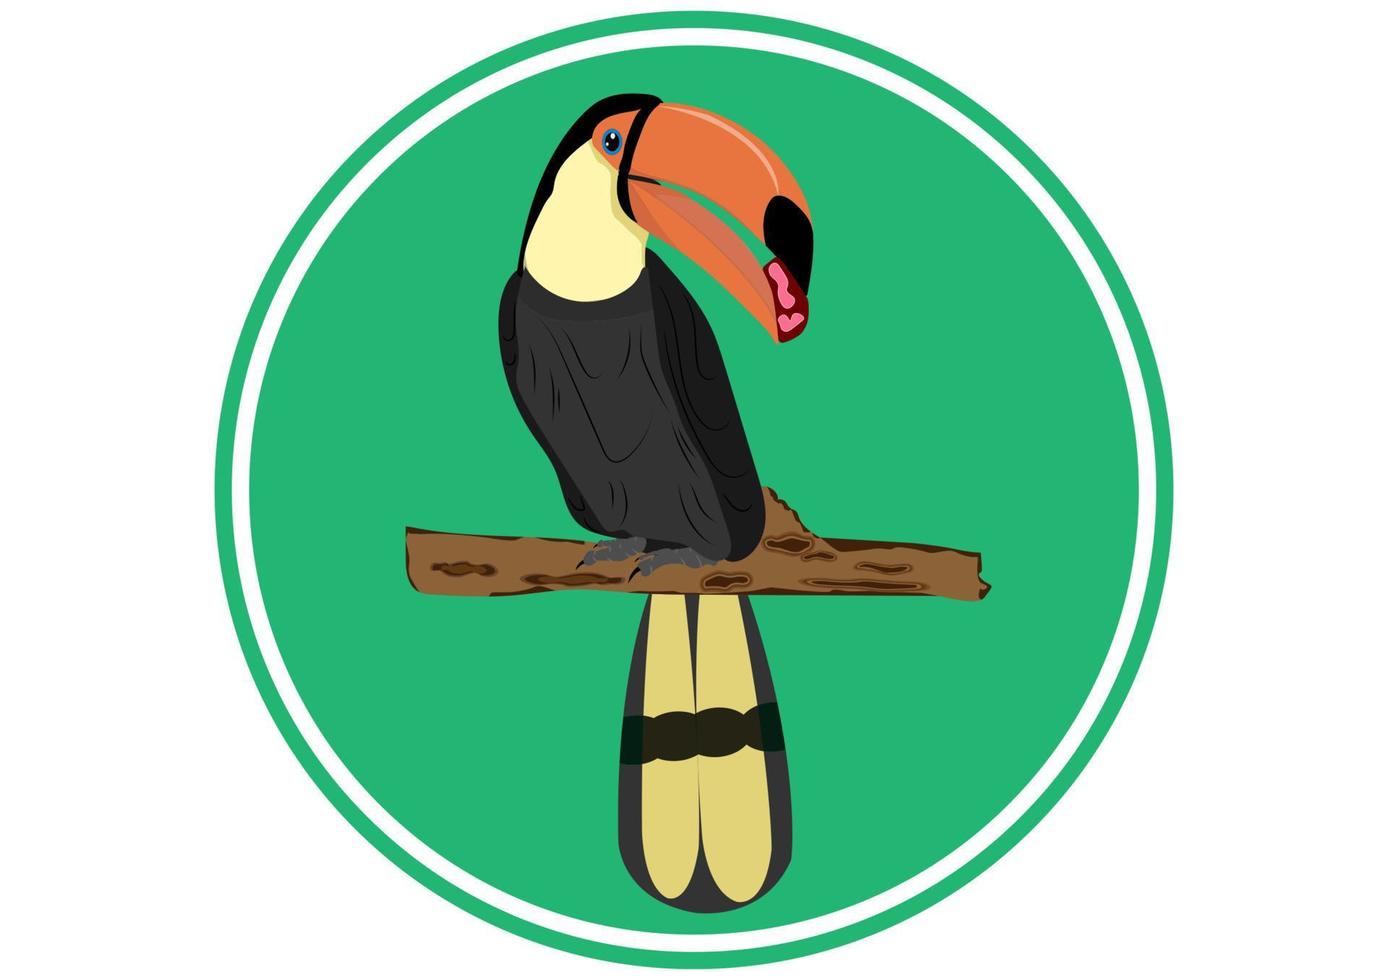 Bird Hornbill standing On branch of tree design for logo Vector Illustration